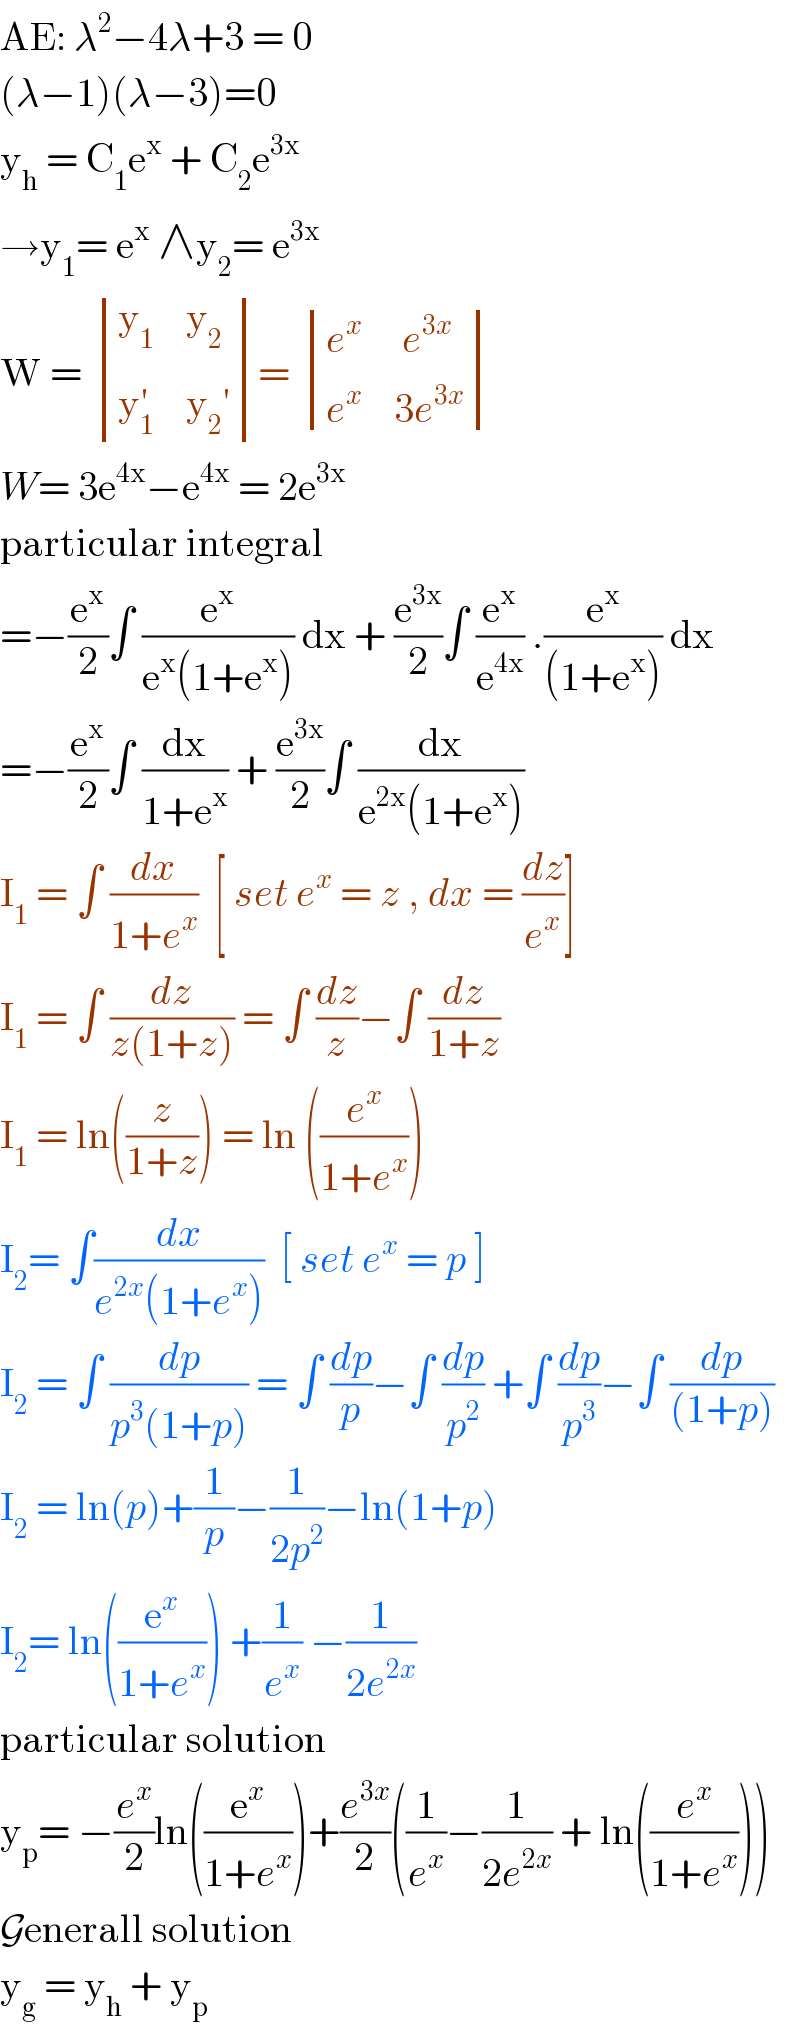 AE: λ^2 −4λ+3 = 0  (λ−1)(λ−3)=0  y_h  = C_1 e^x  + C_2 e^(3x )   →y_1 = e^x  ∧y_2 = e^(3x)   W =  determinant (((y_1     y_2 )),((y_1 ^′     y_2 ′)))=  determinant (((e^x      e^(3x) )),((e^x     3e^(3x) )))  W= 3e^(4x) −e^(4x)  = 2e^(3x)    particular integral   =−(e^x /2)∫ (e^x /(e^x (1+e^x ))) dx + (e^(3x) /2)∫ (e^x /e^(4x) ) .(e^x /((1+e^x ))) dx  =−(e^x /2)∫ (dx/(1+e^x )) + (e^(3x) /2)∫ (dx/(e^(2x) (1+e^x )))  I_1  = ∫ (dx/(1+e^x ))  [ set e^x  = z , dx = (dz/e^x )]  I_1  = ∫ (dz/(z(1+z))) = ∫ (dz/z)−∫ (dz/(1+z))  I_1  = ln((z/(1+z))) = ln ((e^x /(1+e^x )))  I_2 = ∫(dx/(e^(2x) (1+e^x )))  [ set e^x  = p ]   I_2  = ∫ (dp/(p^3 (1+p))) = ∫ (dp/p)−∫ (dp/p^2 ) +∫ (dp/p^3 )−∫ (dp/((1+p)))  I_2  = ln(p)+(1/p)−(1/(2p^2 ))−ln(1+p)  I_2 = ln((e^x /(1+e^x ))) +(1/e^x ) −(1/(2e^(2x) ))  particular solution   y_p = −(e^x /2)ln((e^x /(1+e^x )))+(e^(3x) /2)((1/e^x )−(1/(2e^(2x) )) + ln((e^x /(1+e^x ))))  Generall solution   y_g  = y_h  + y_p    